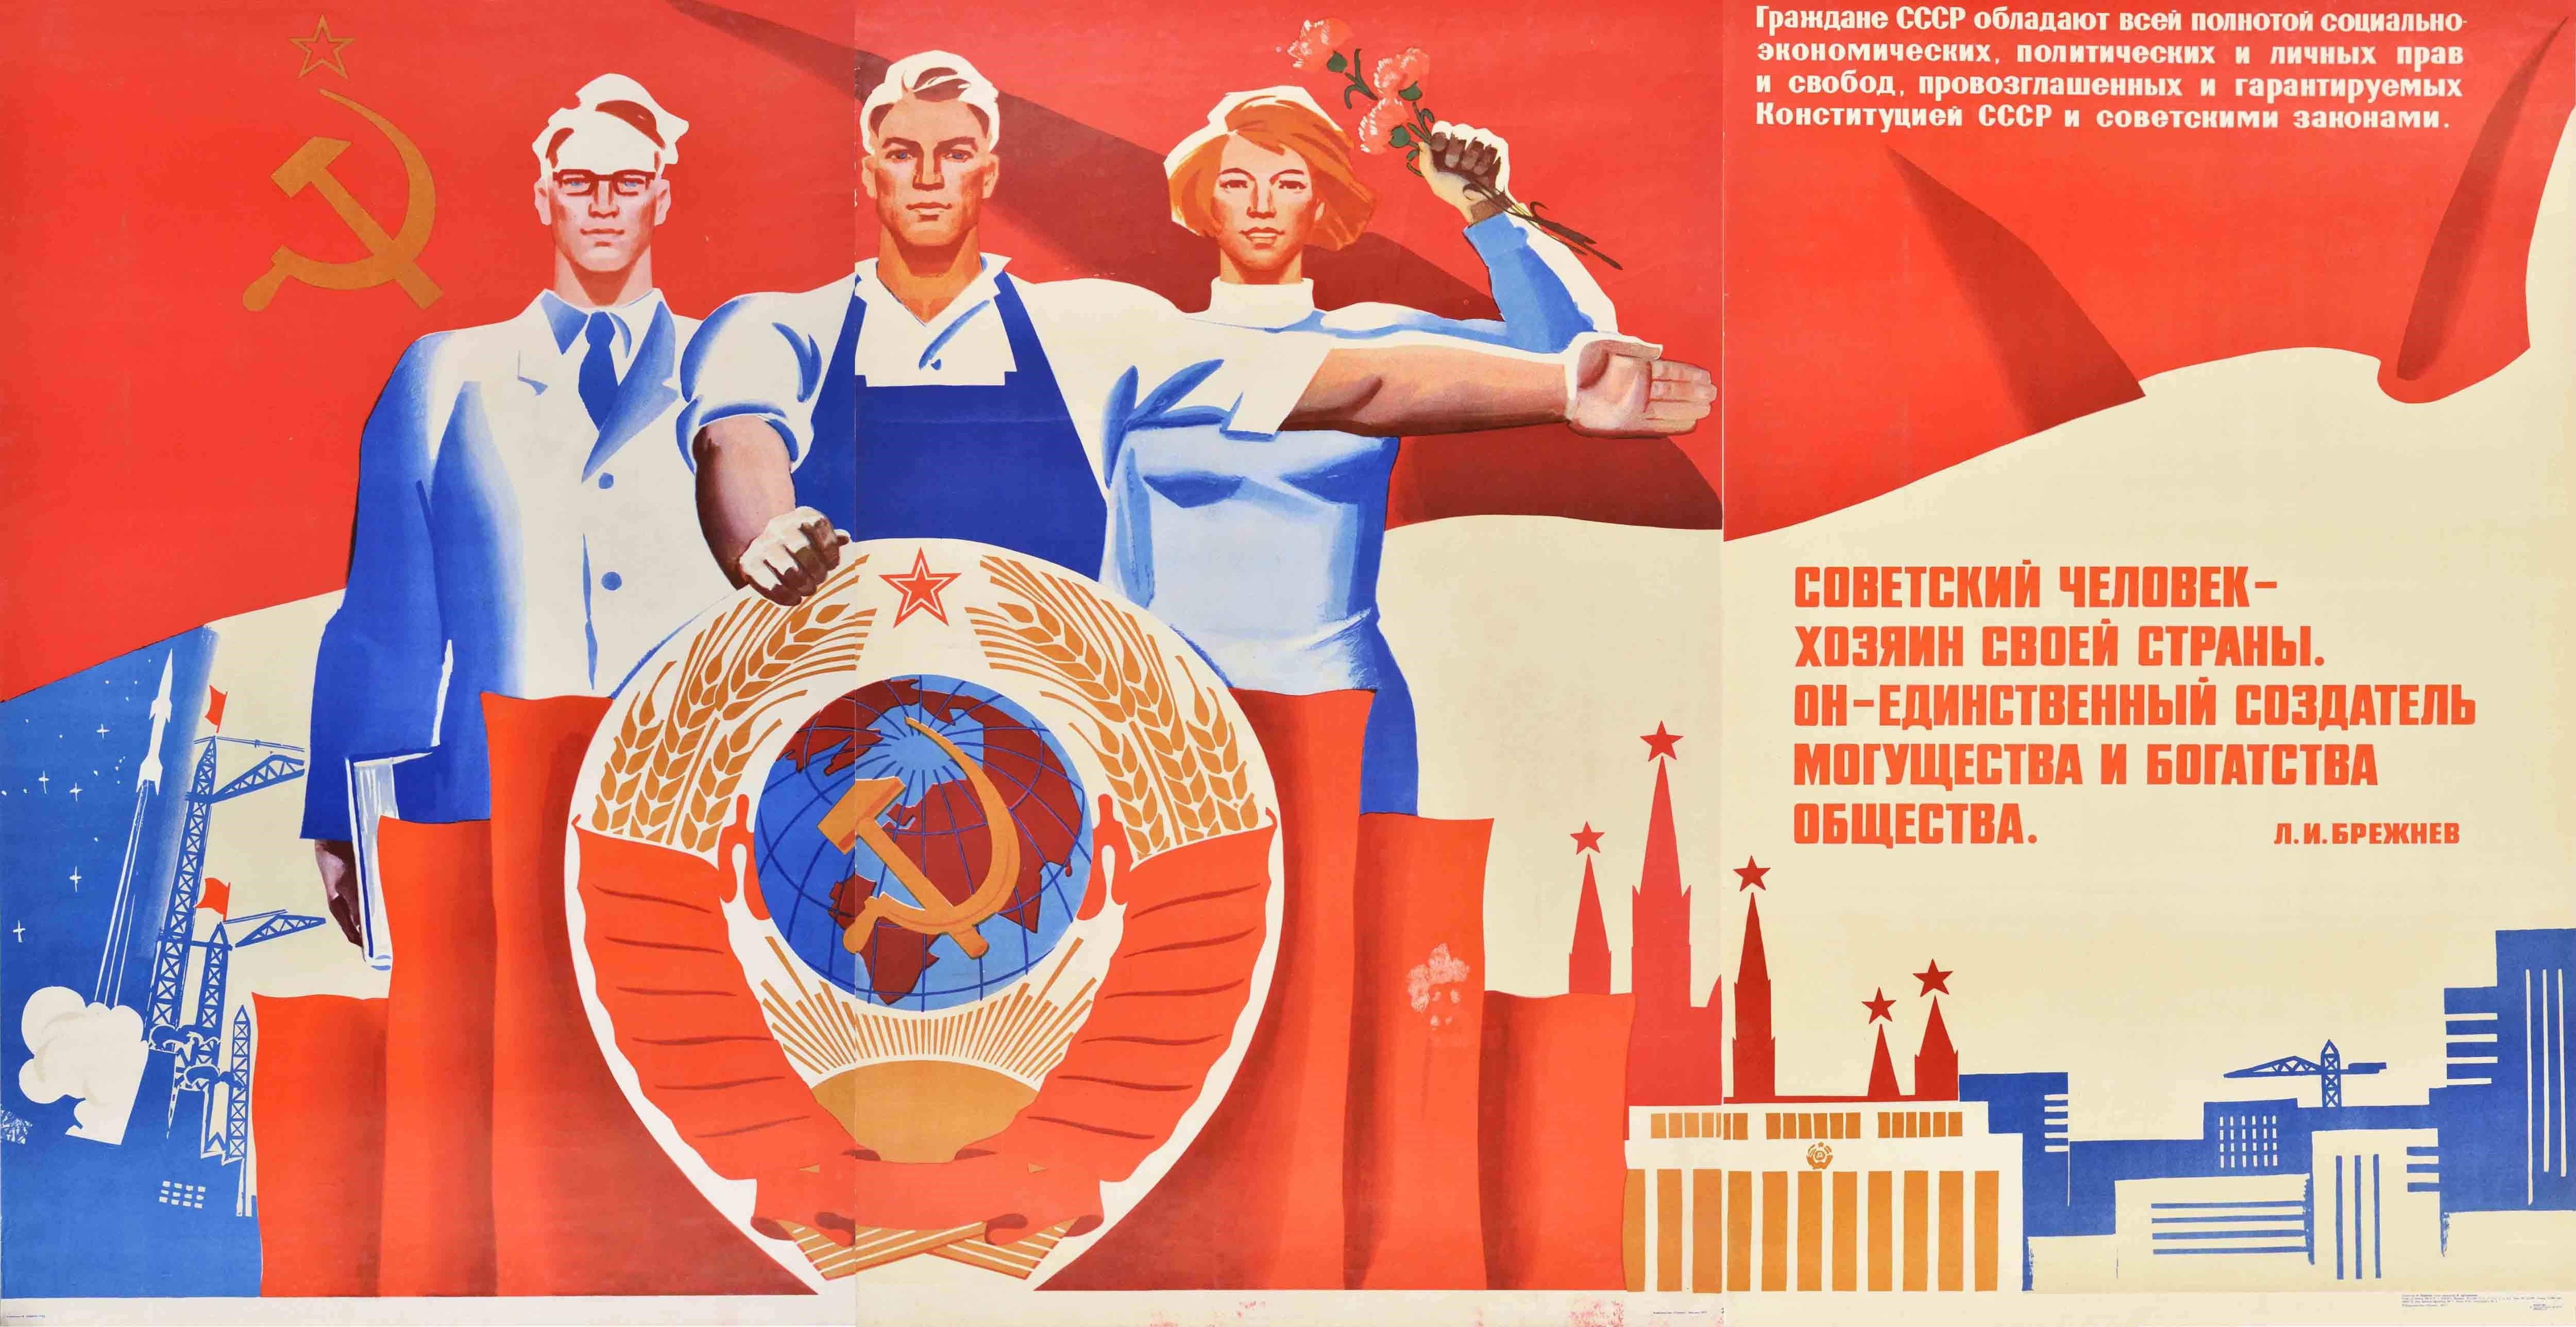 vintage propaganda poster maker